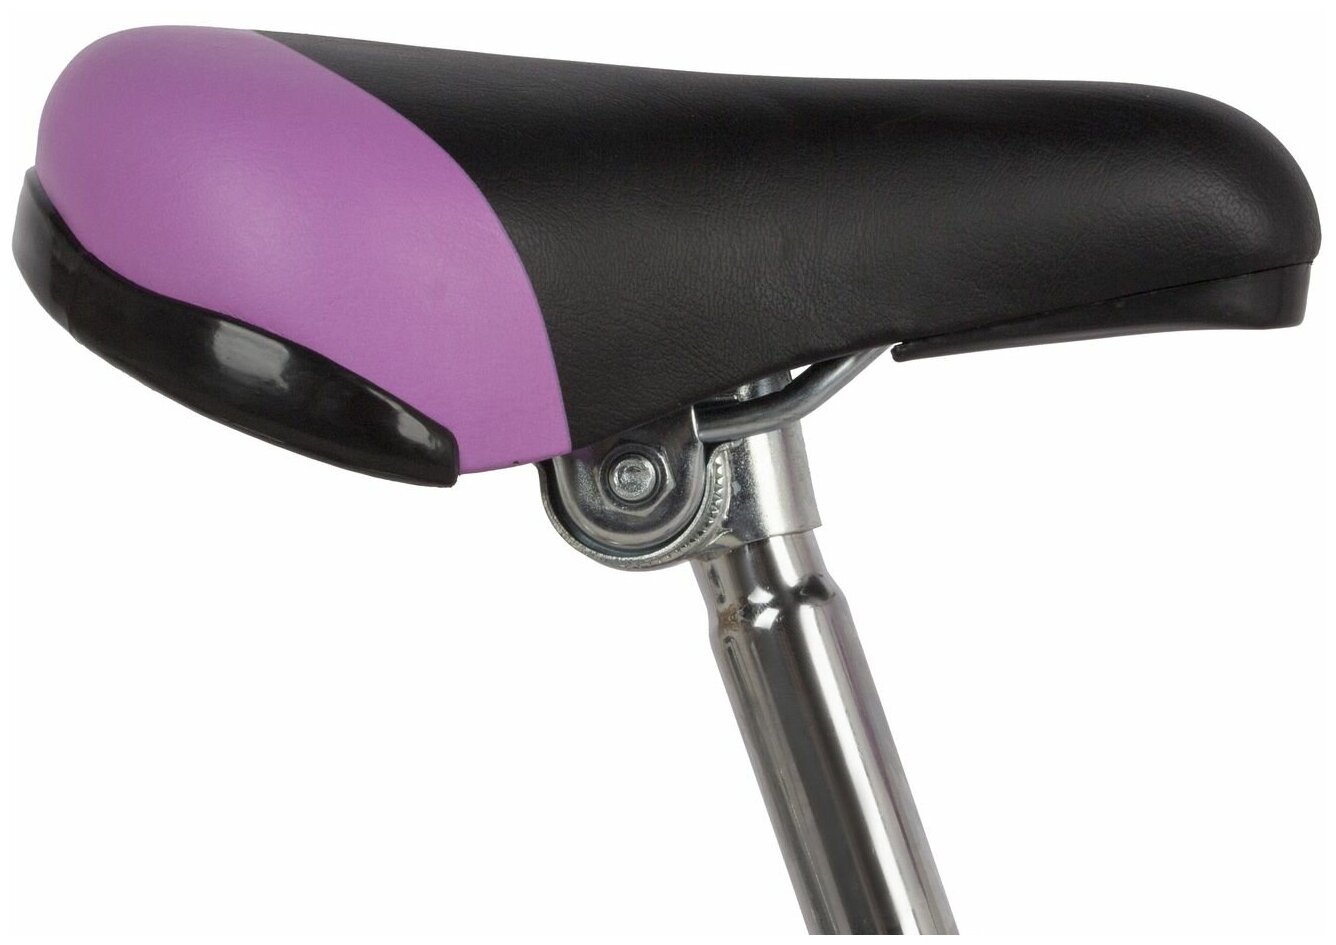 Велосипед NOVATRACK VECTOR 20" (2022) (Велосипед NOVATRACK 20" VECTOR фиолетовый, защита А-тип, тормоз нож, крылья и багажник хром.)